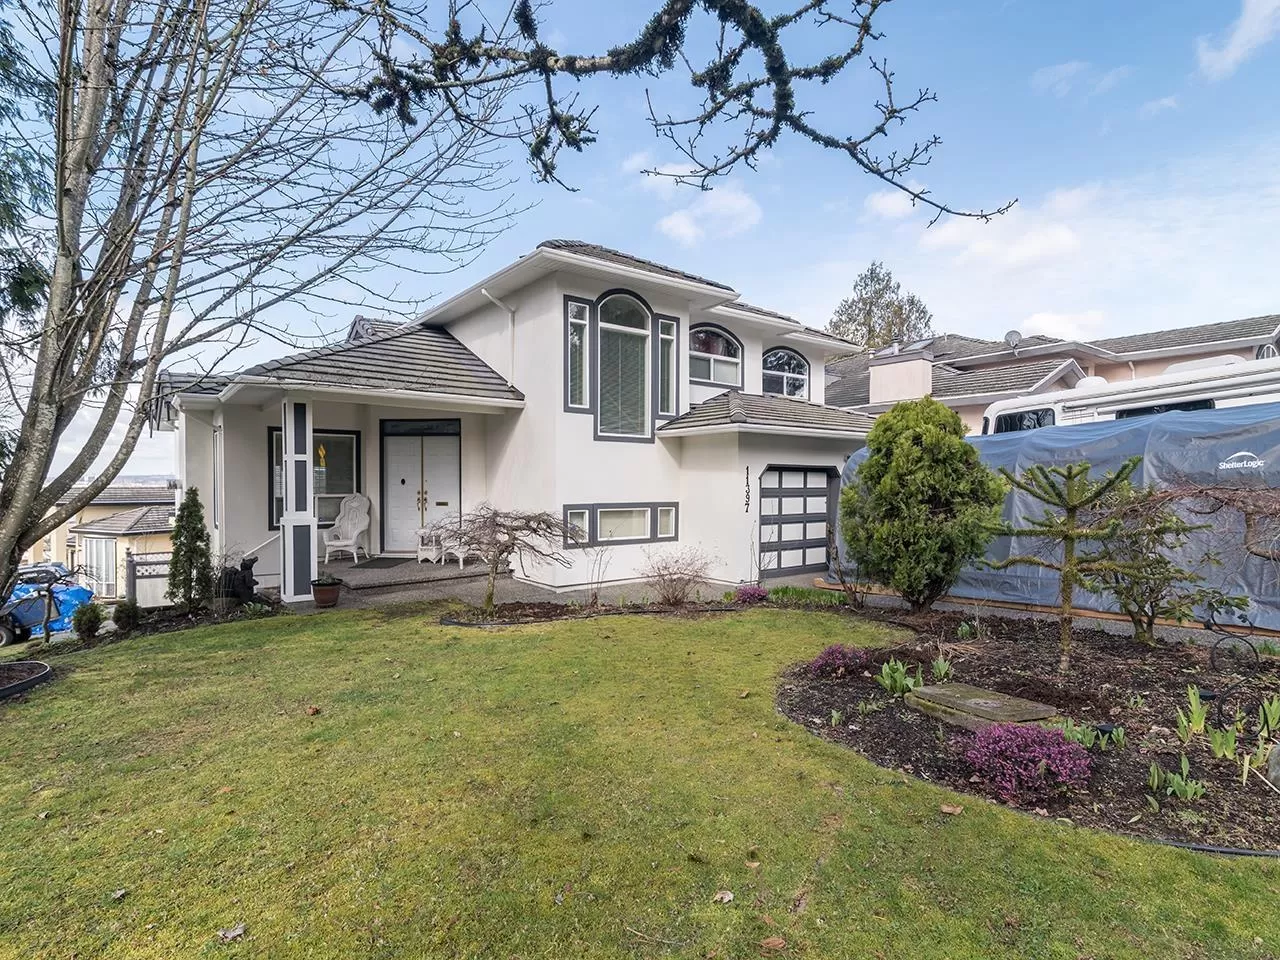 House for rent: 11397 Royal Crescent, Surrey, British Columbia V3V 2S8